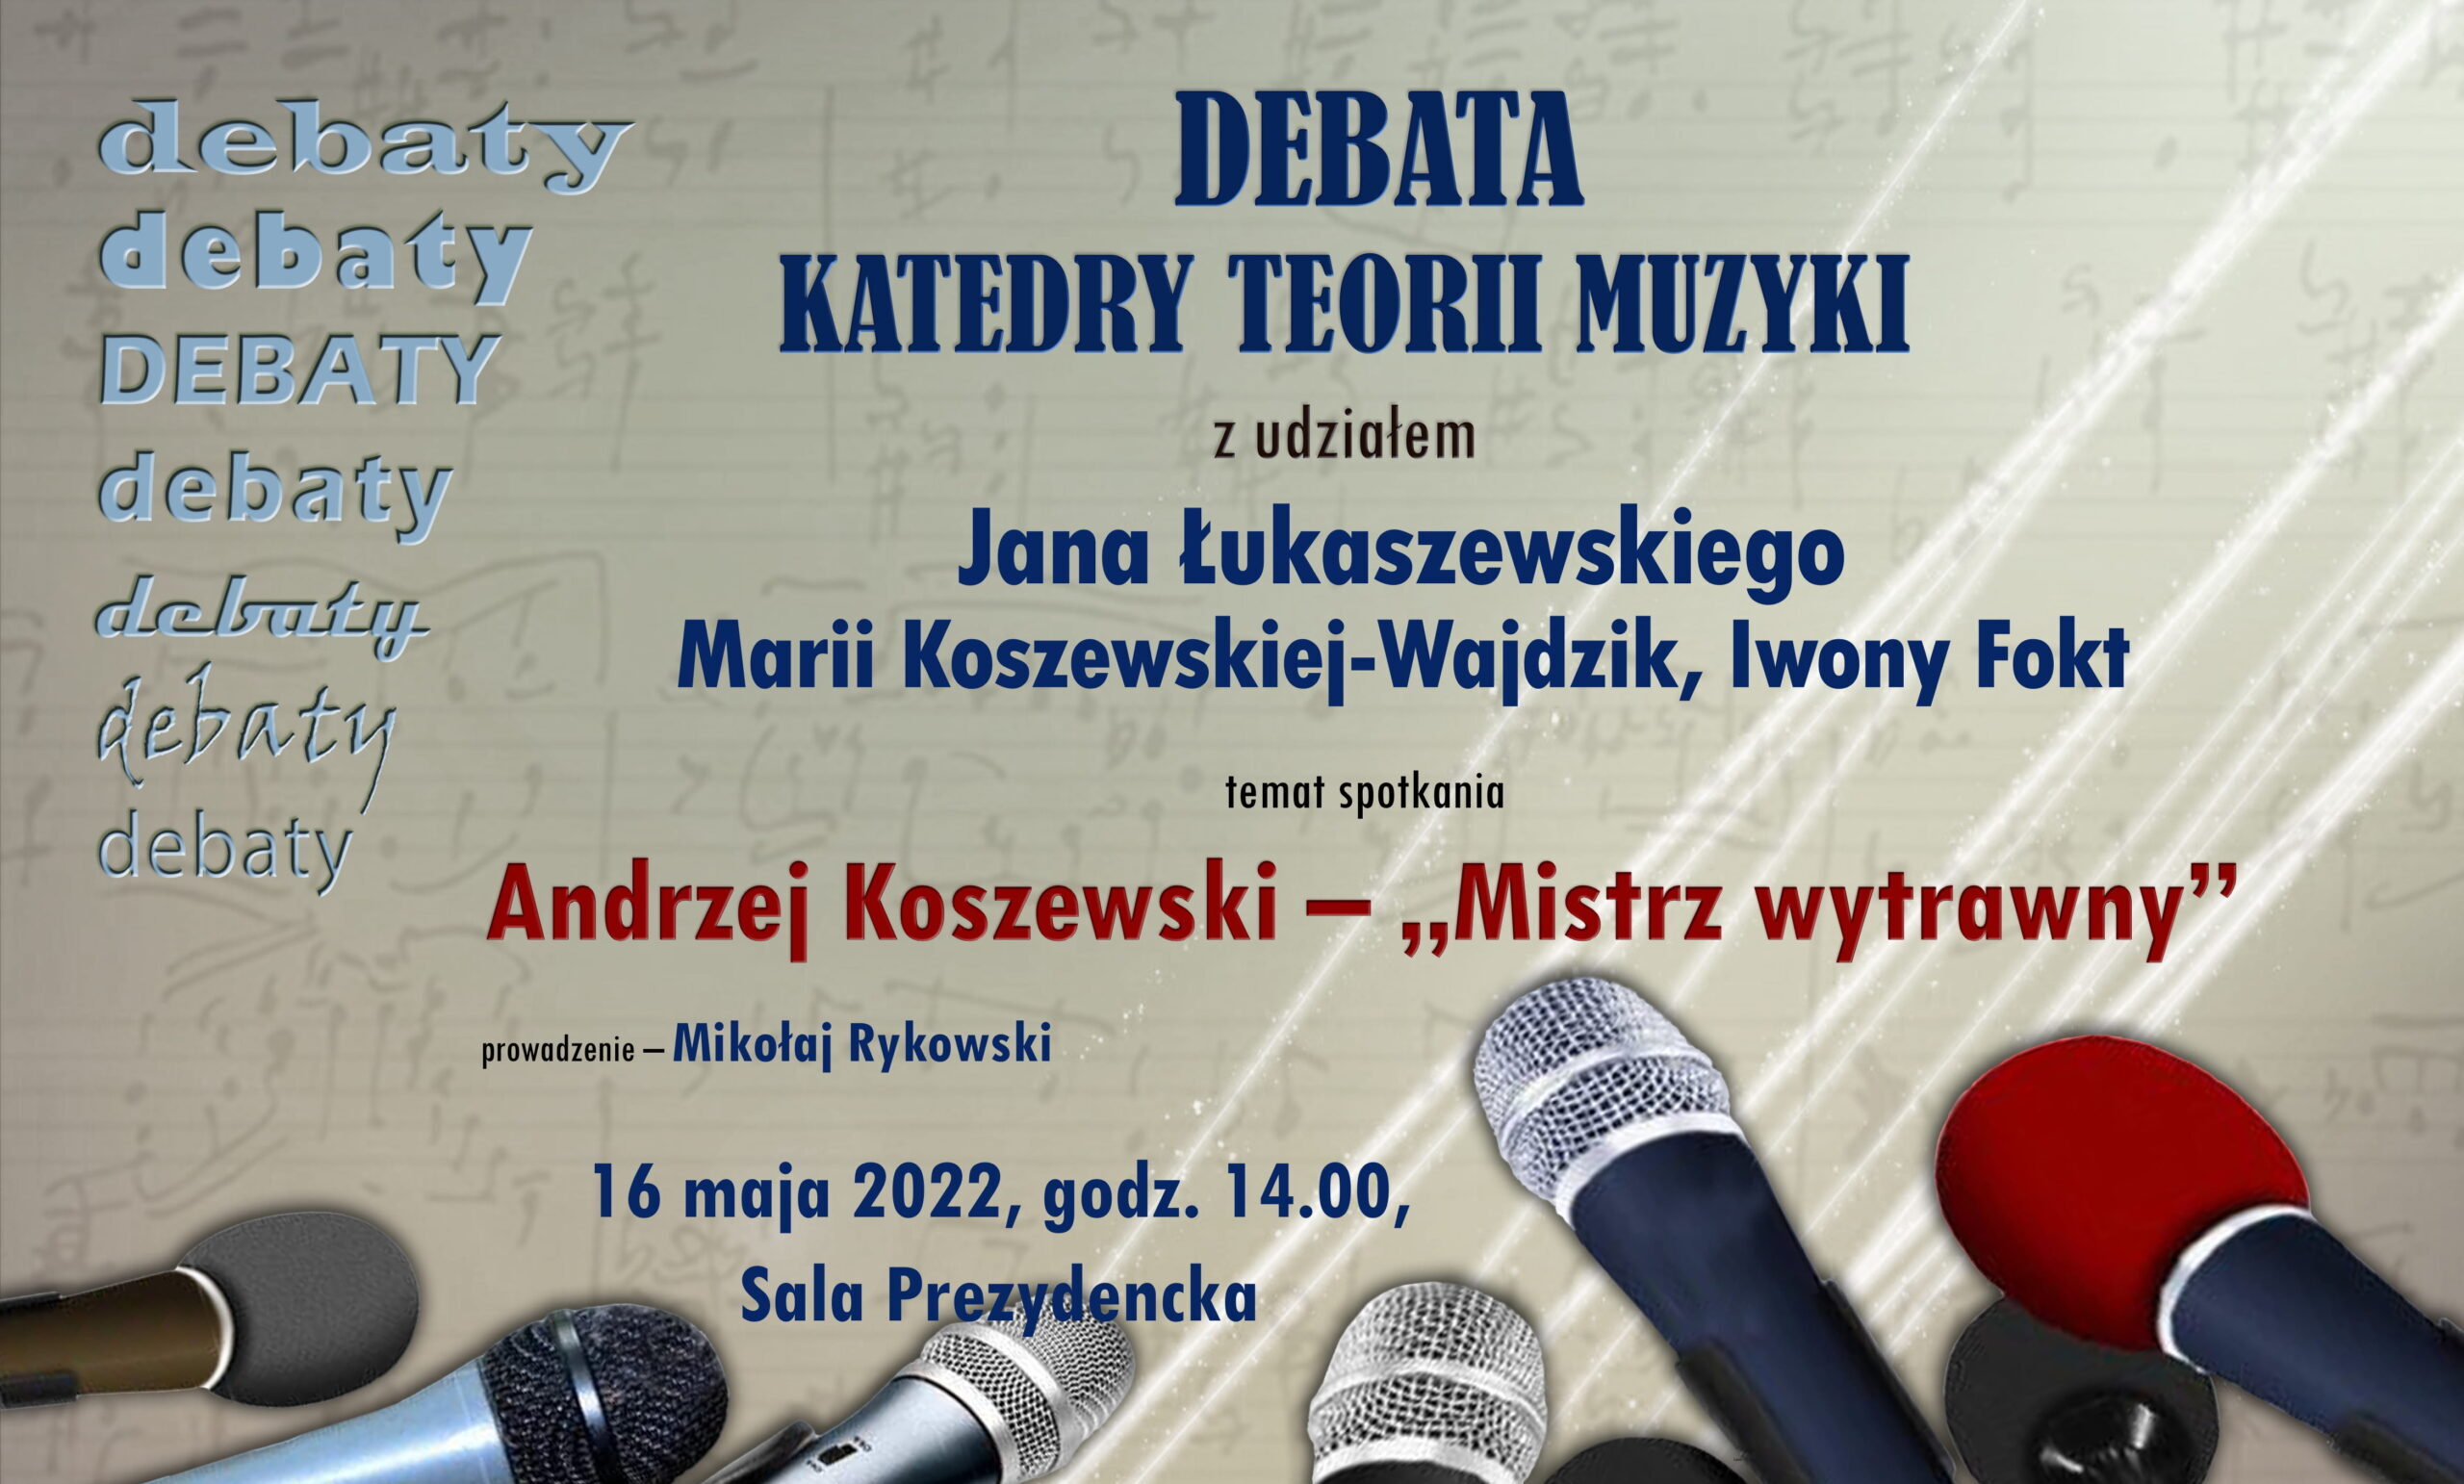 Afisz z informacją o debacie Katedry Teorii Muzyki z udziałem Jana Łukaszewskiego, Marii Koszewskiej-Wjadzik i Iwony Fokt